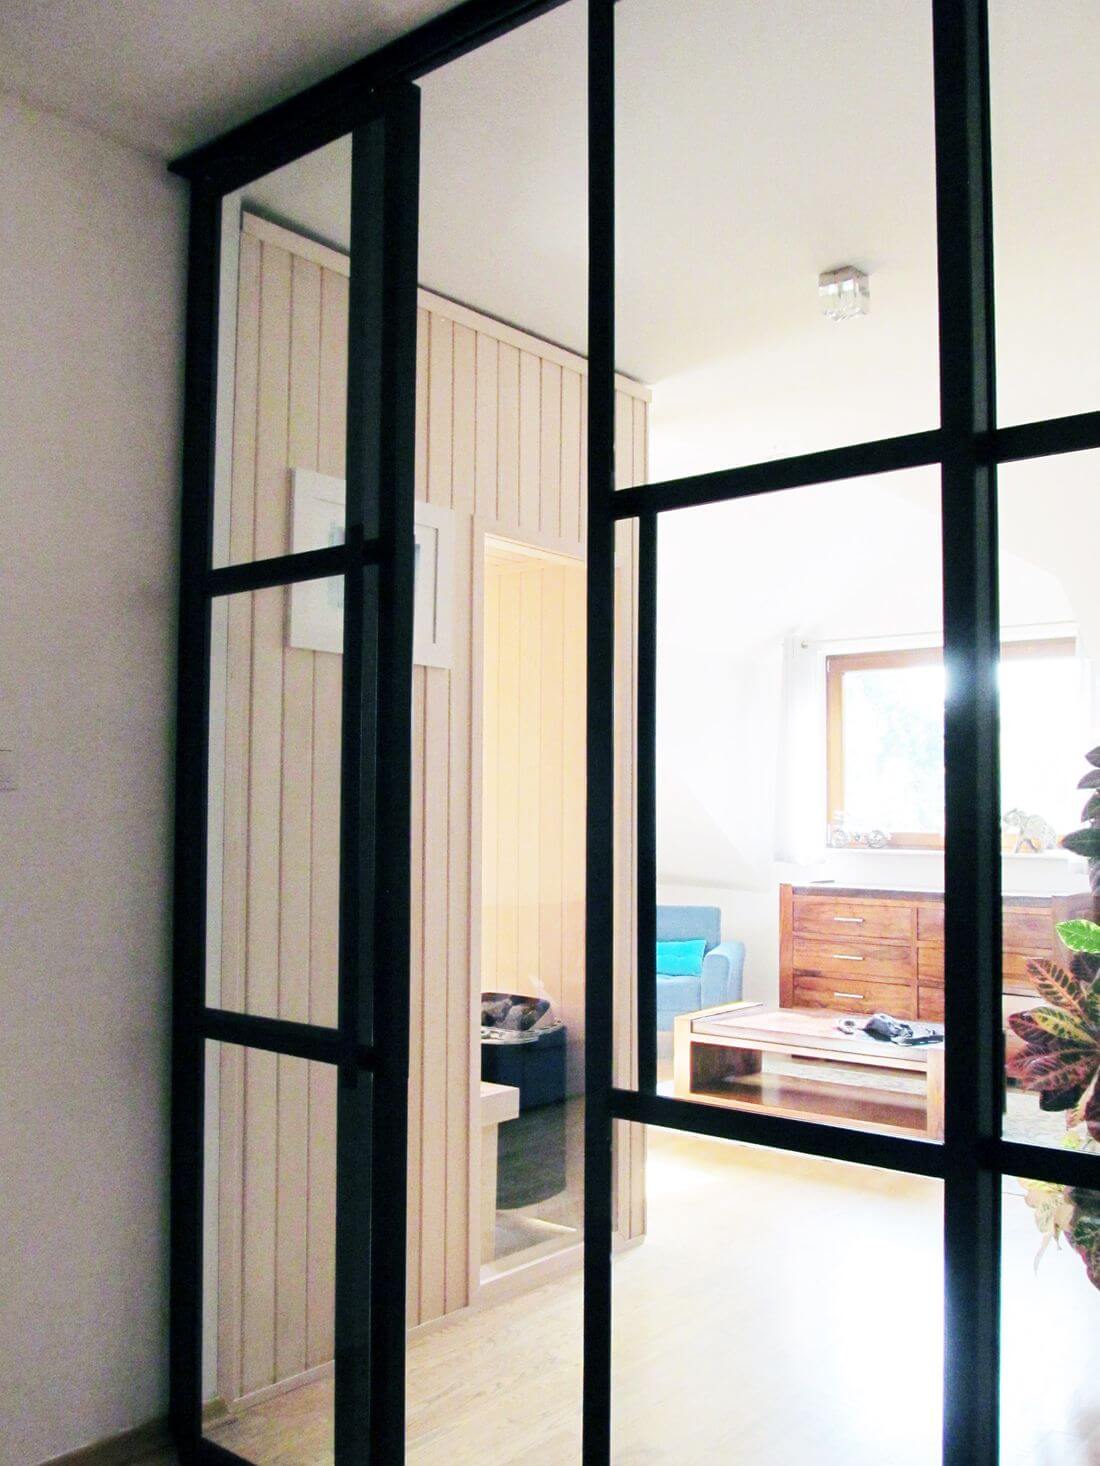 Rozsuwane drzwi loftowe w surowym stylu industrialnym z metalu oraz szkła